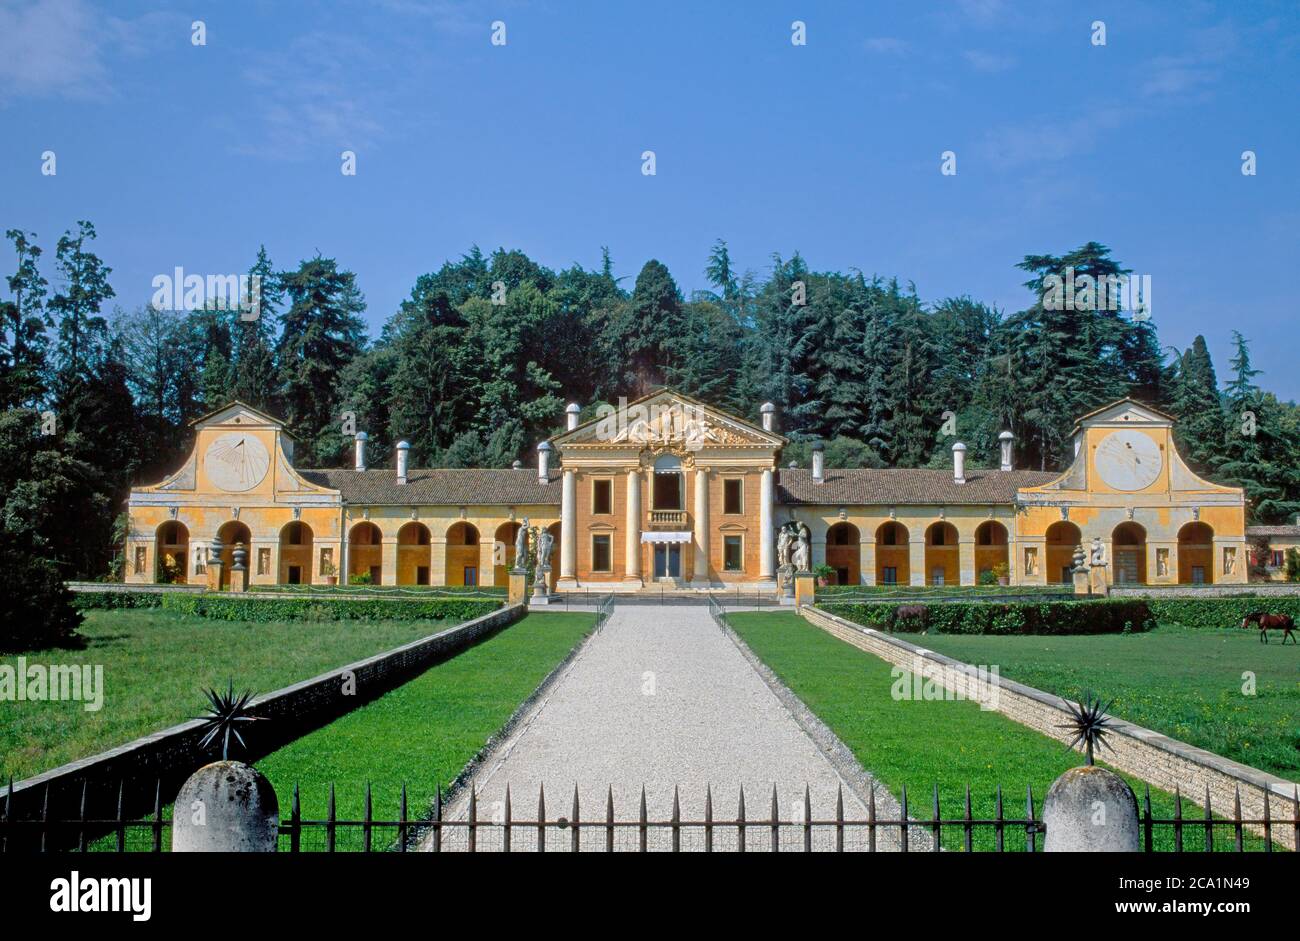 Villa Barbaro, auch bekannt als Villa di Maser, entworfen von Andrea Palladio in den 1550er Jahren befindet sich in der Region Venetien in Norditalien. Stockfoto